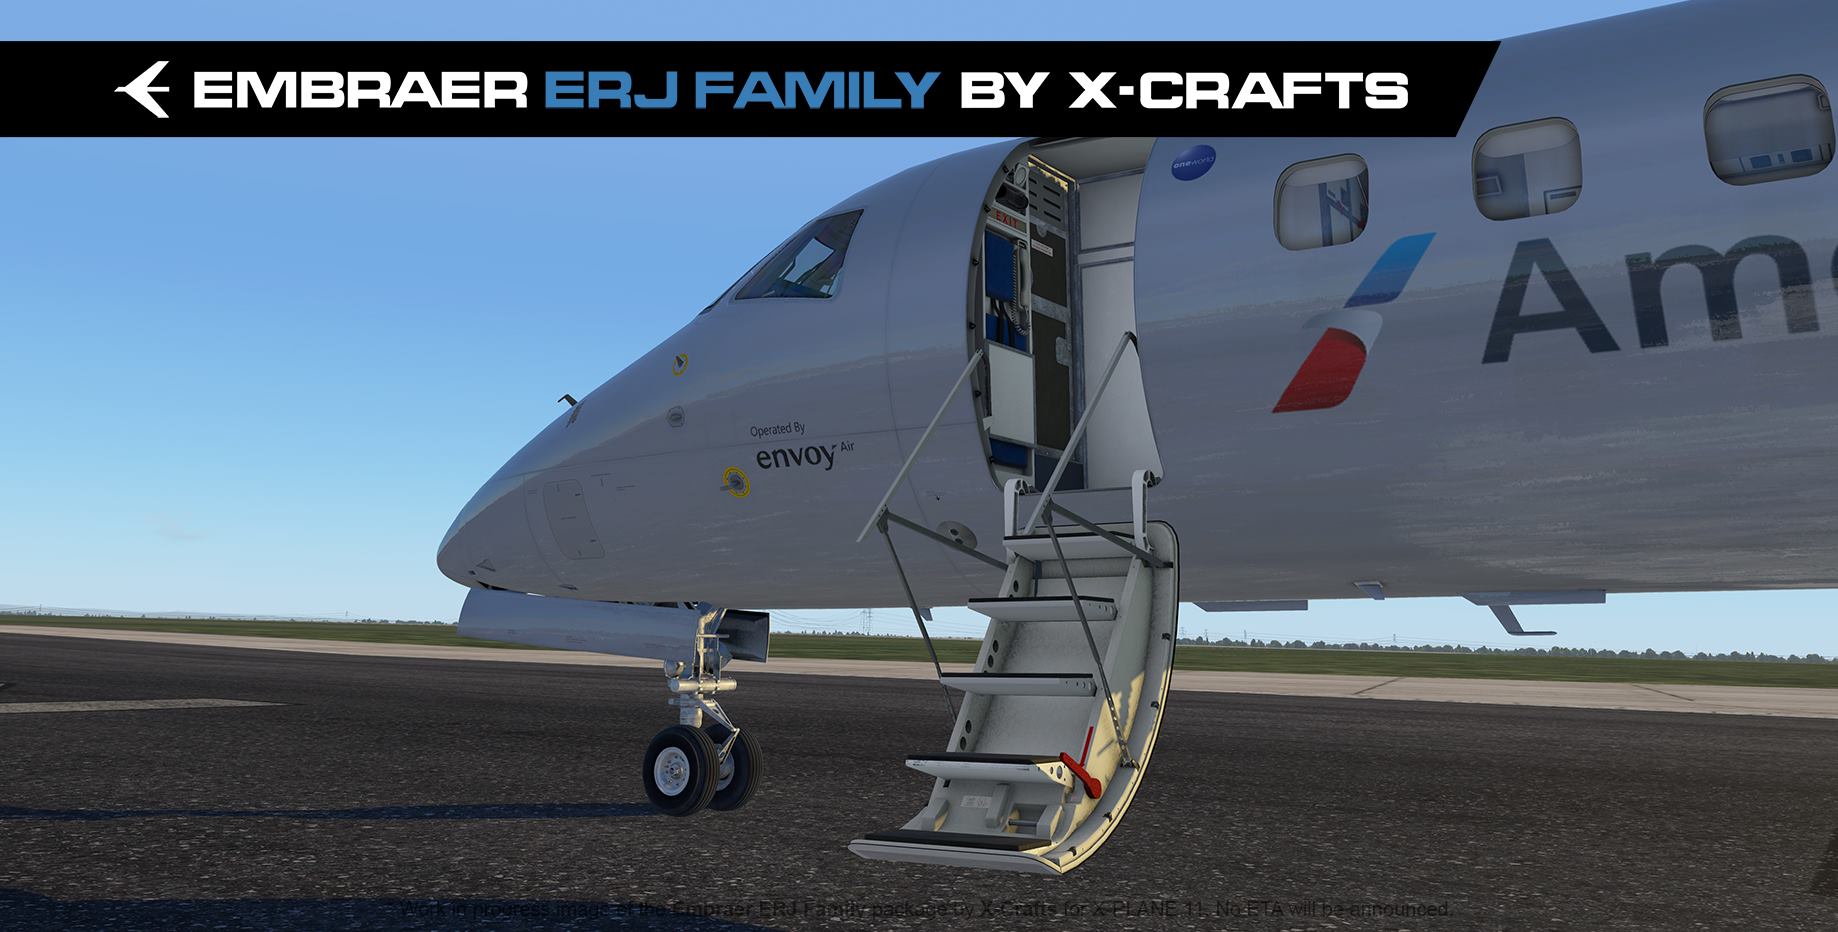 X-Crafts nous offre quelques nouvelles images du ERJ Family en cours de développement